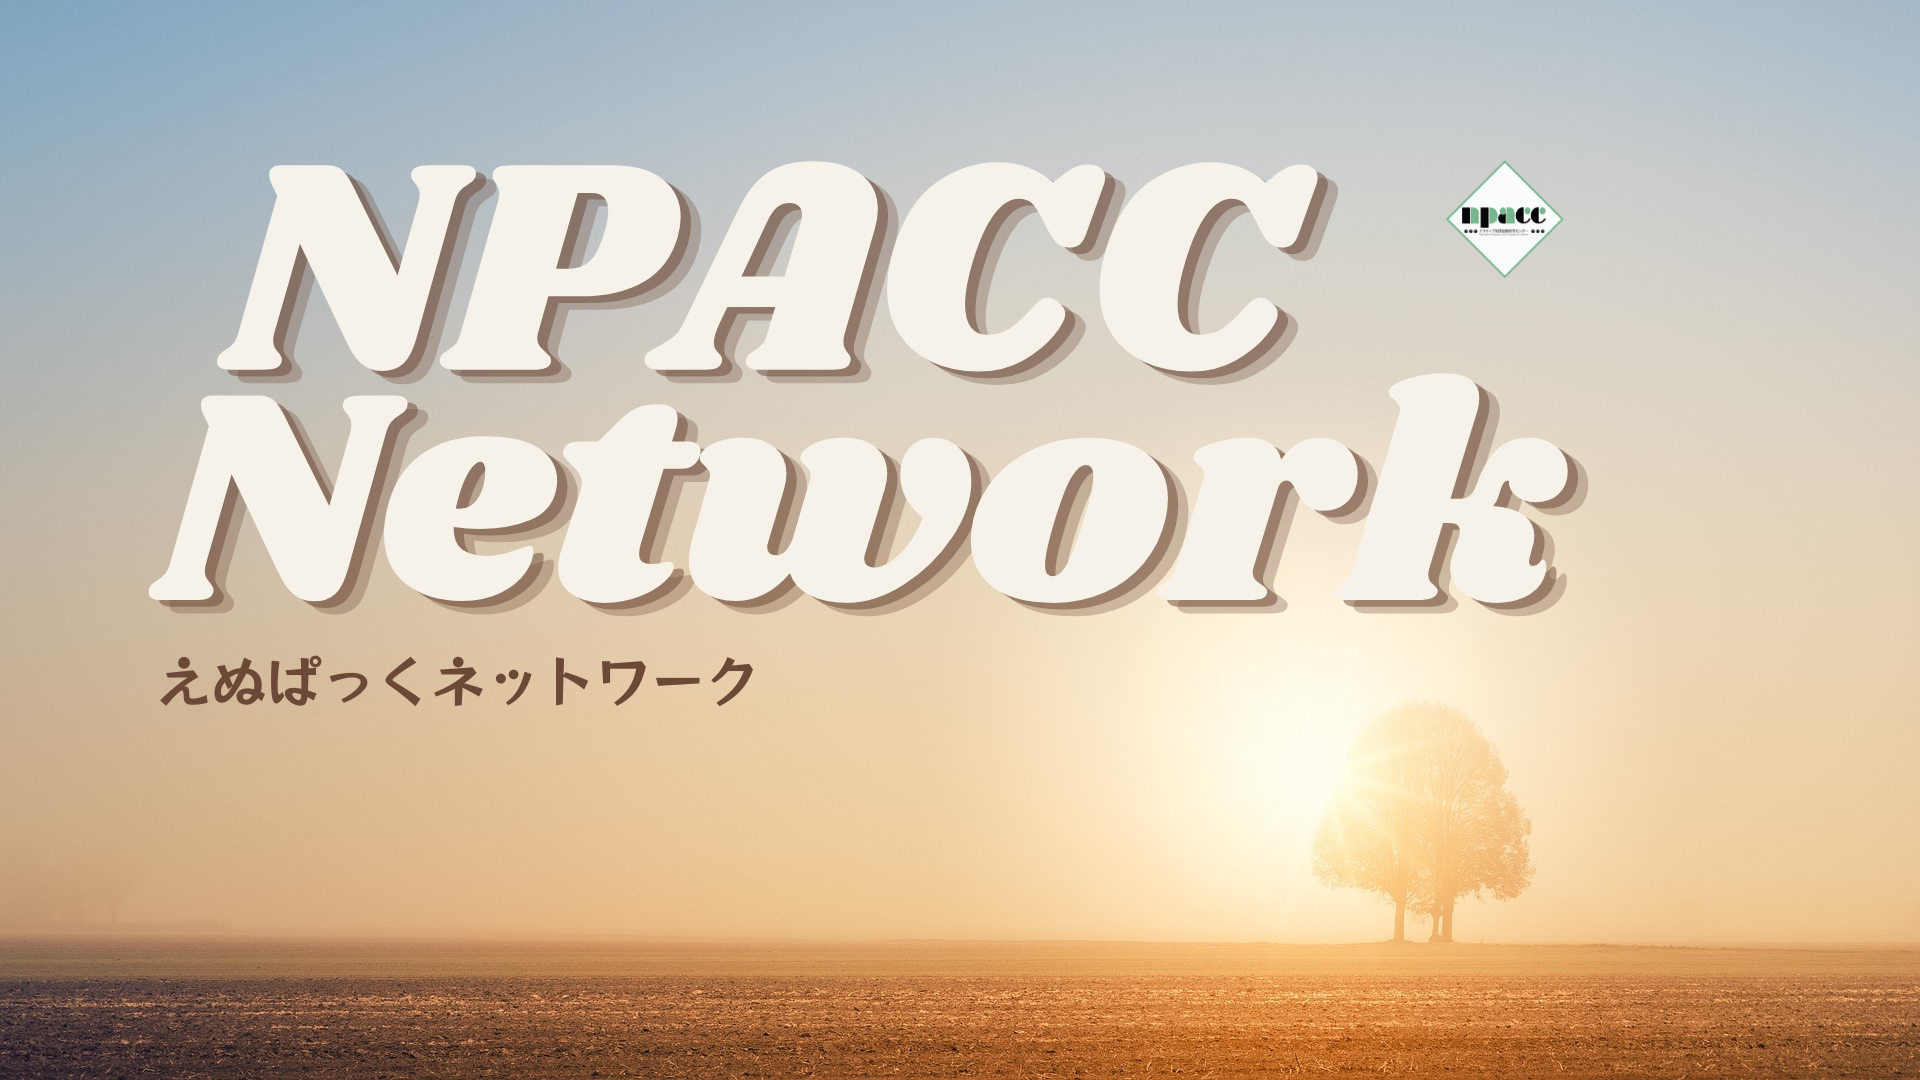 NPACC Network